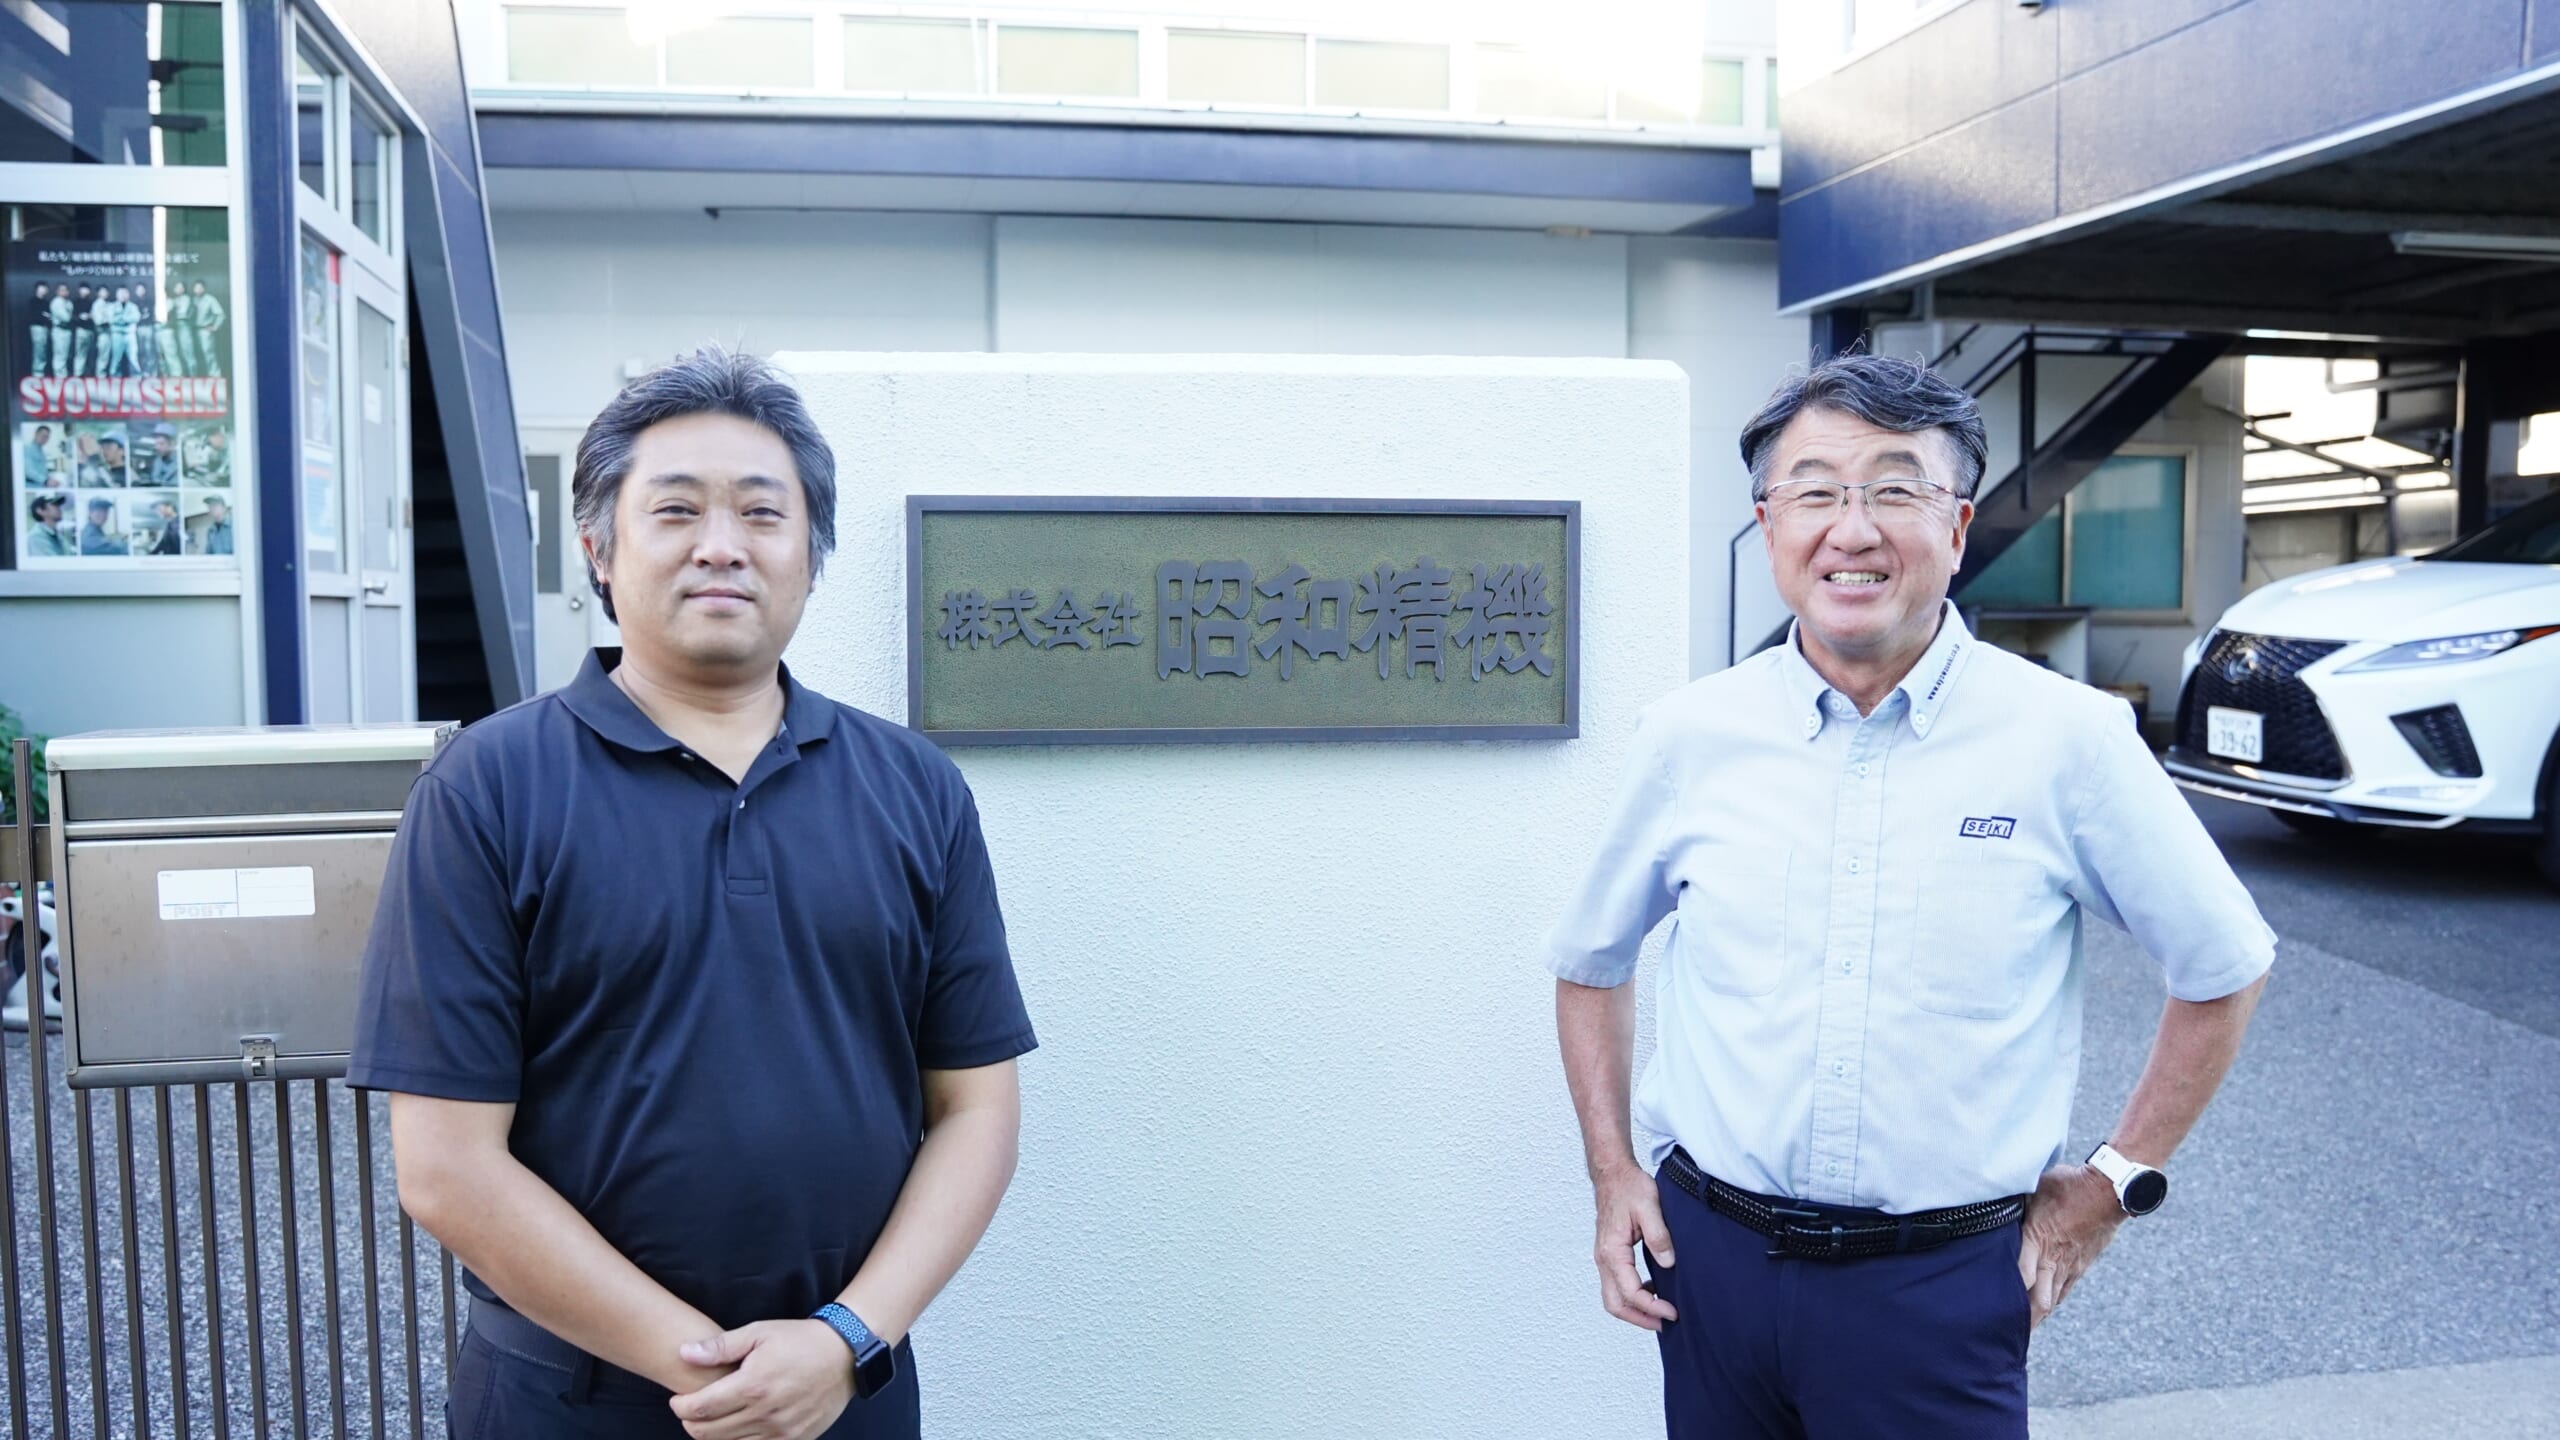  General Manager Kazama (left) and President Kobayashi (right) of SHOWA SEIKI　